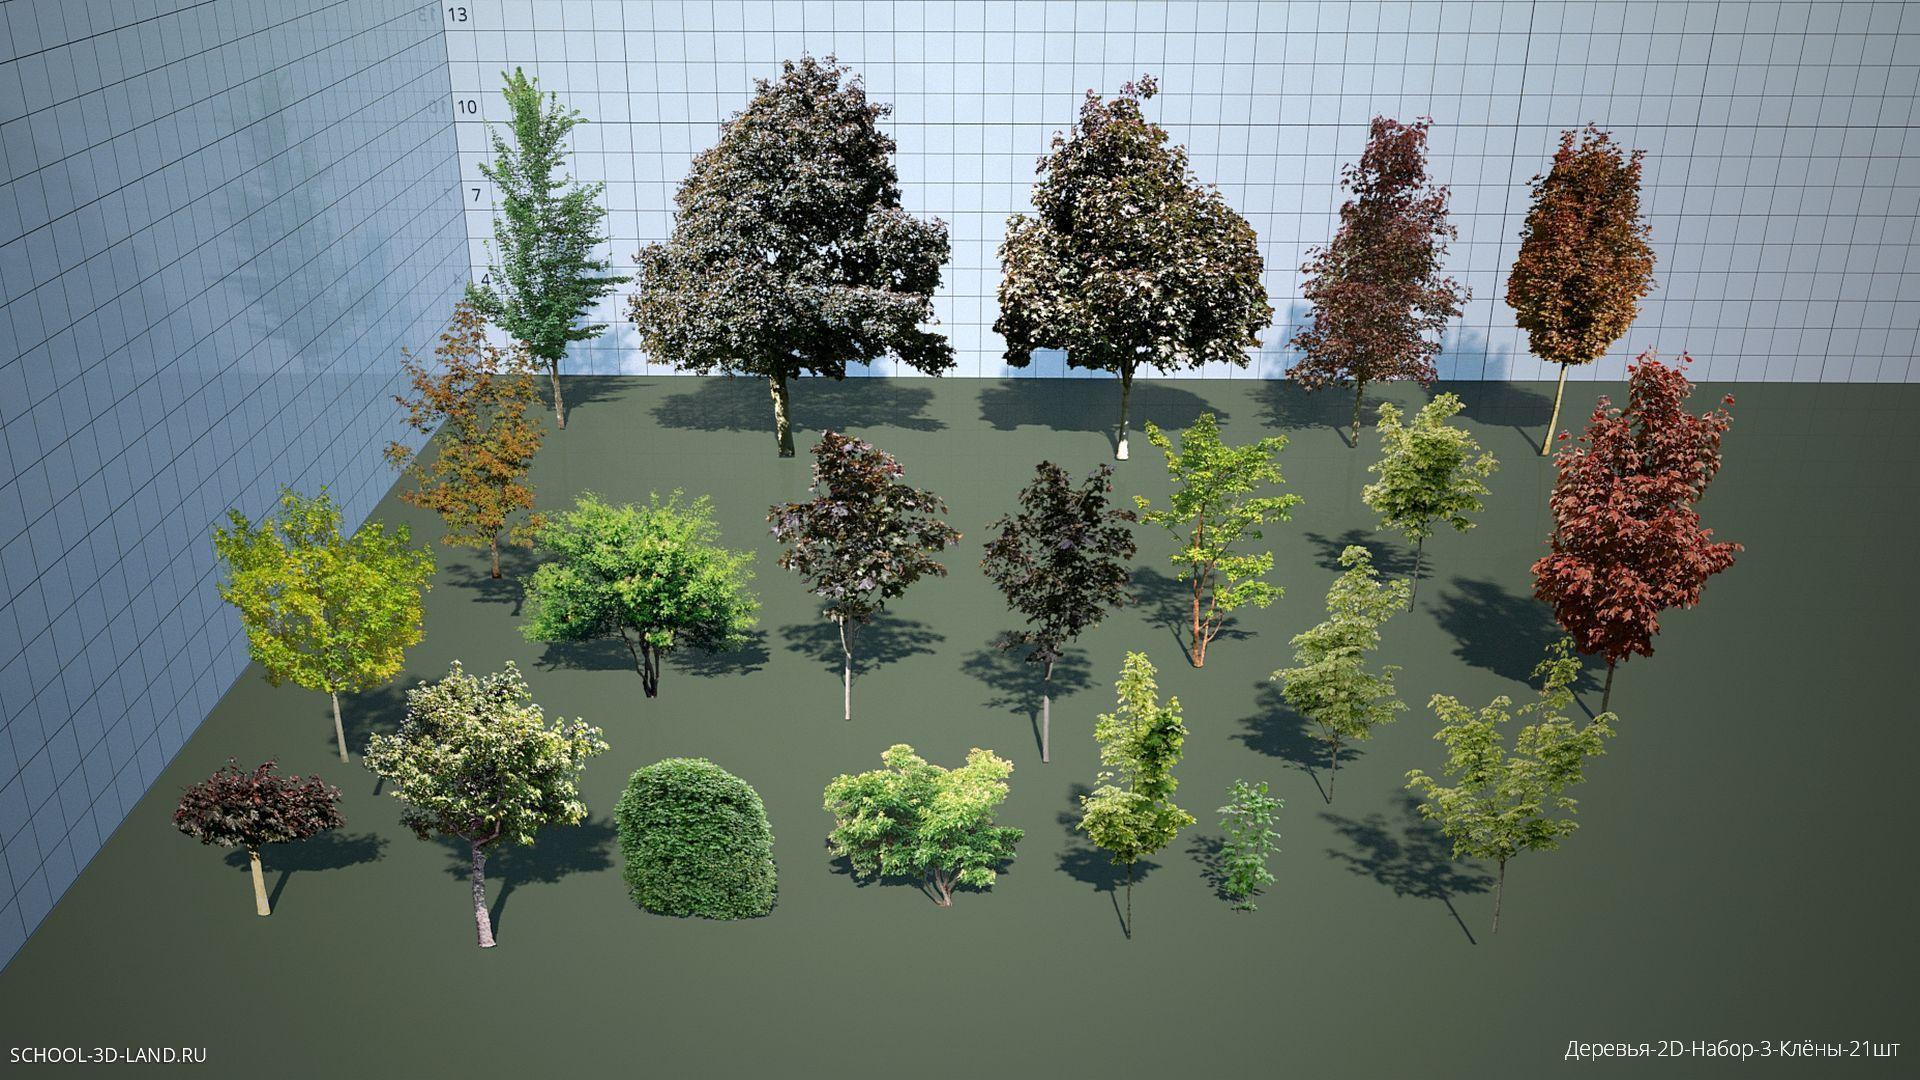 Trees-2D-Set-3-A (21pcs)